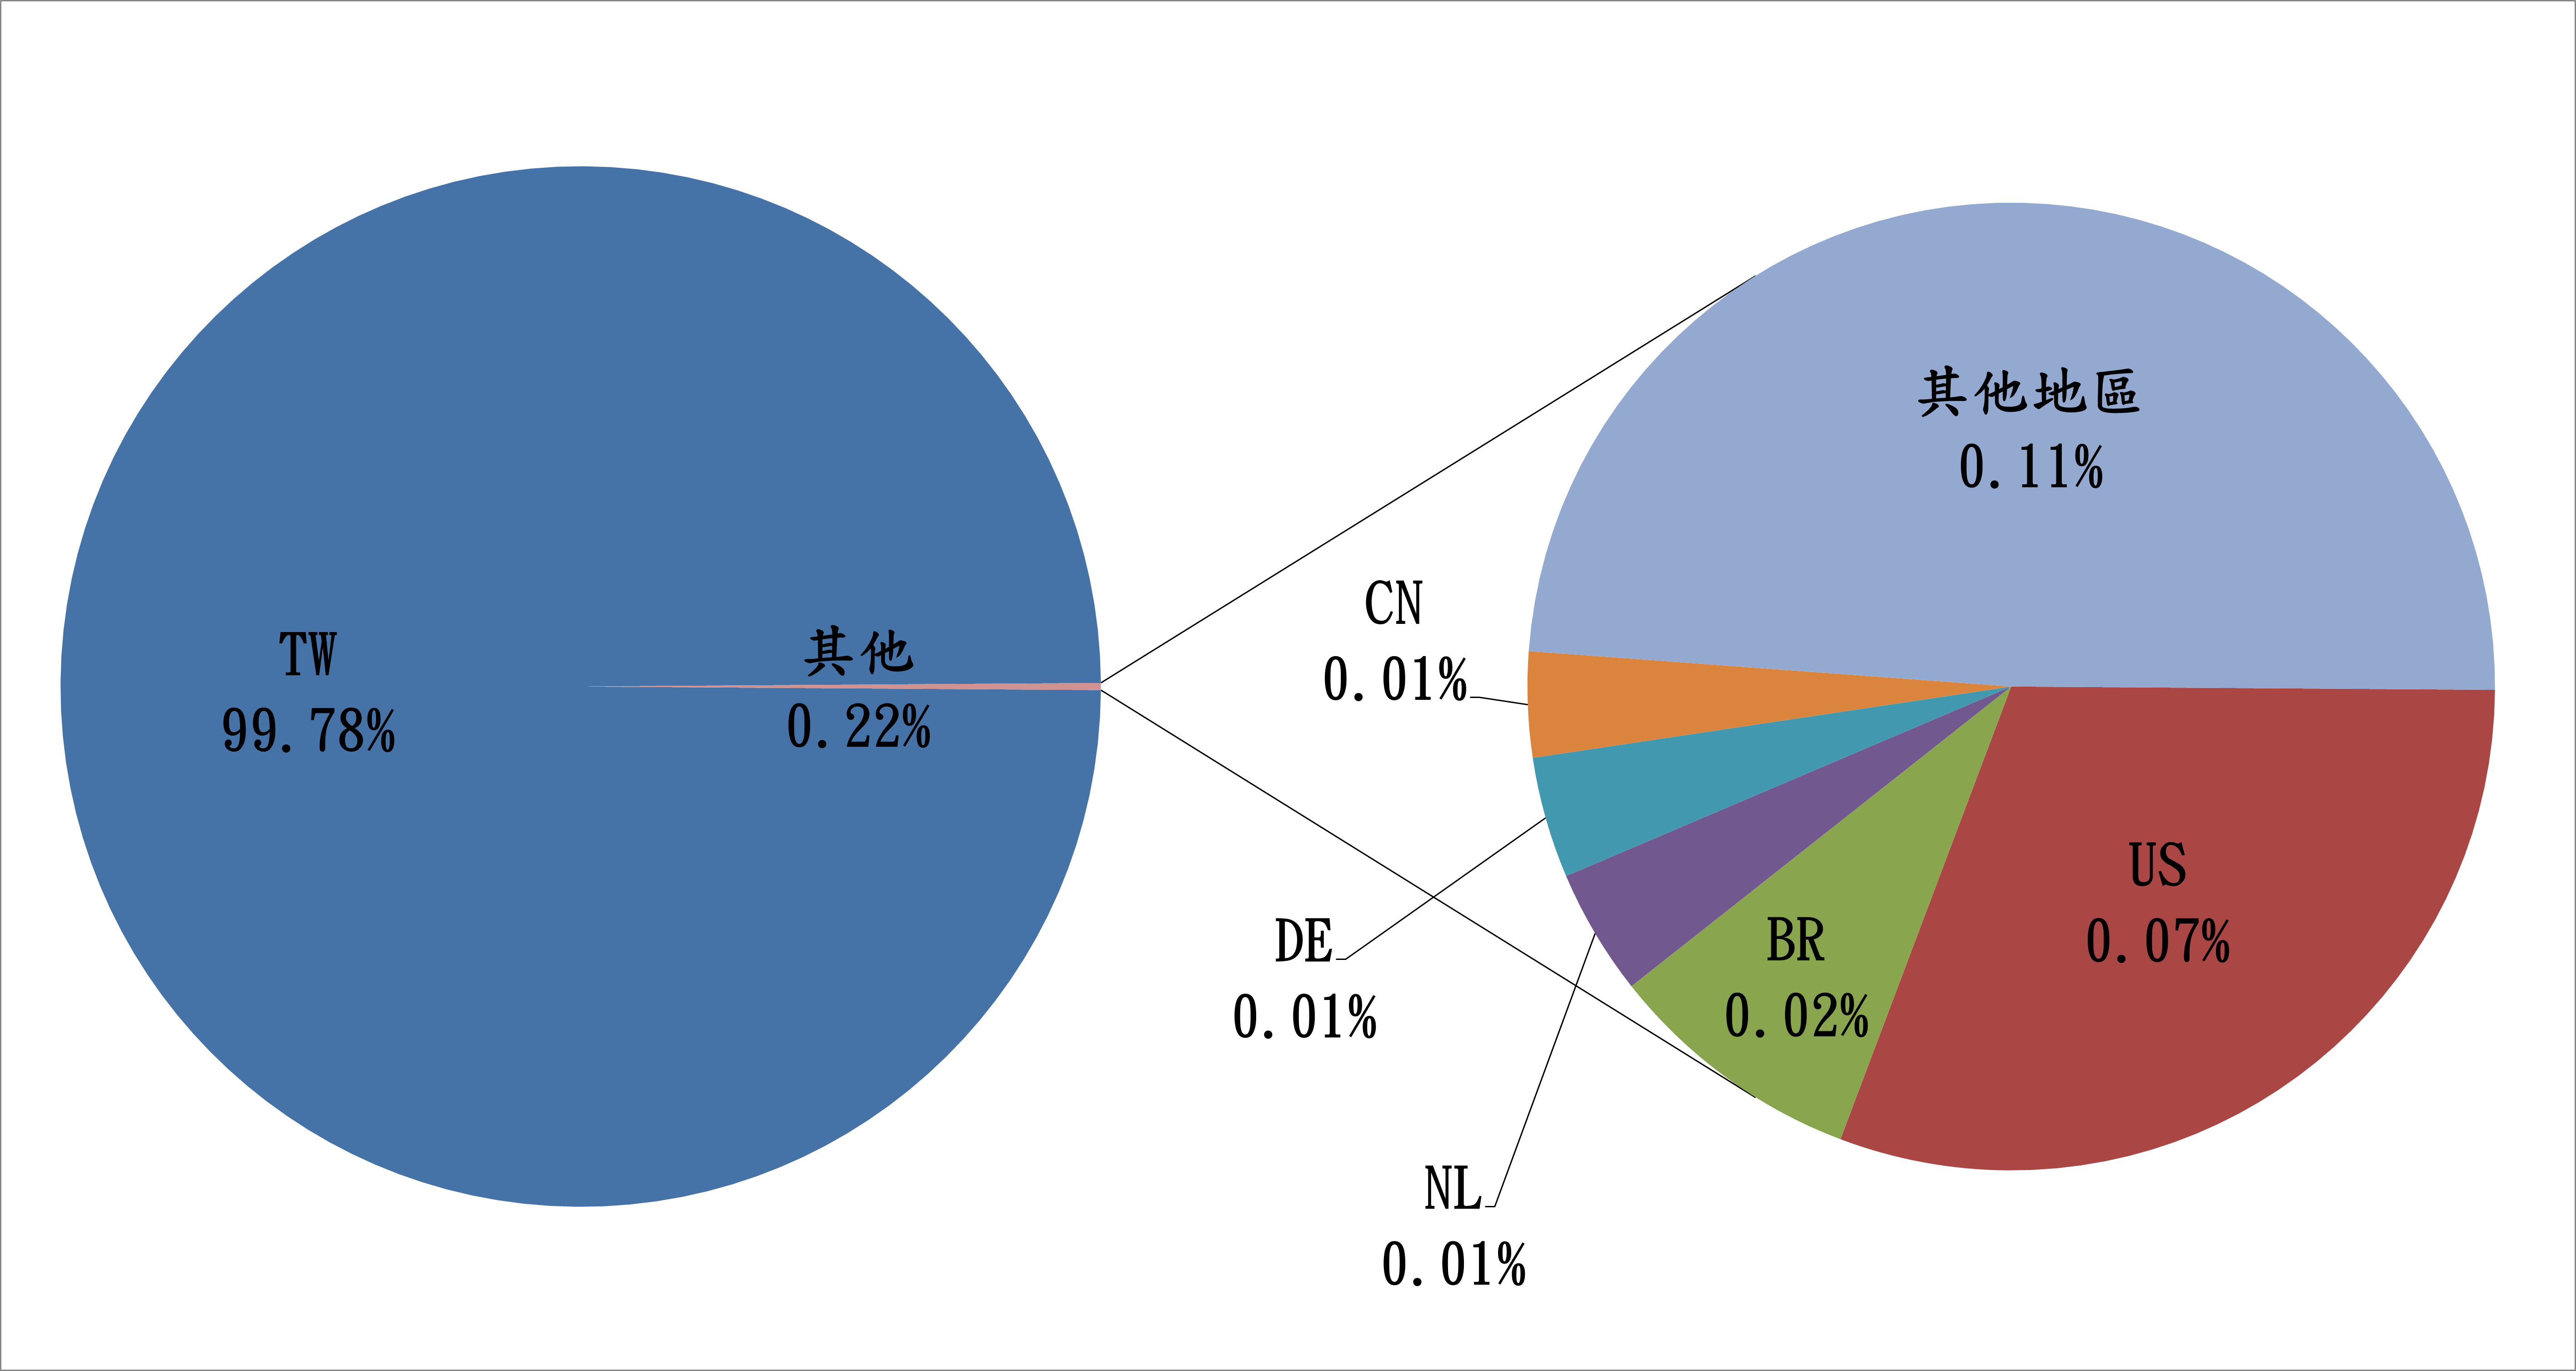 TW99.78% 其他0.22% CN0.01% DE0.01% NL0.01% BR0.025 US0.07% 其他地區0.11%